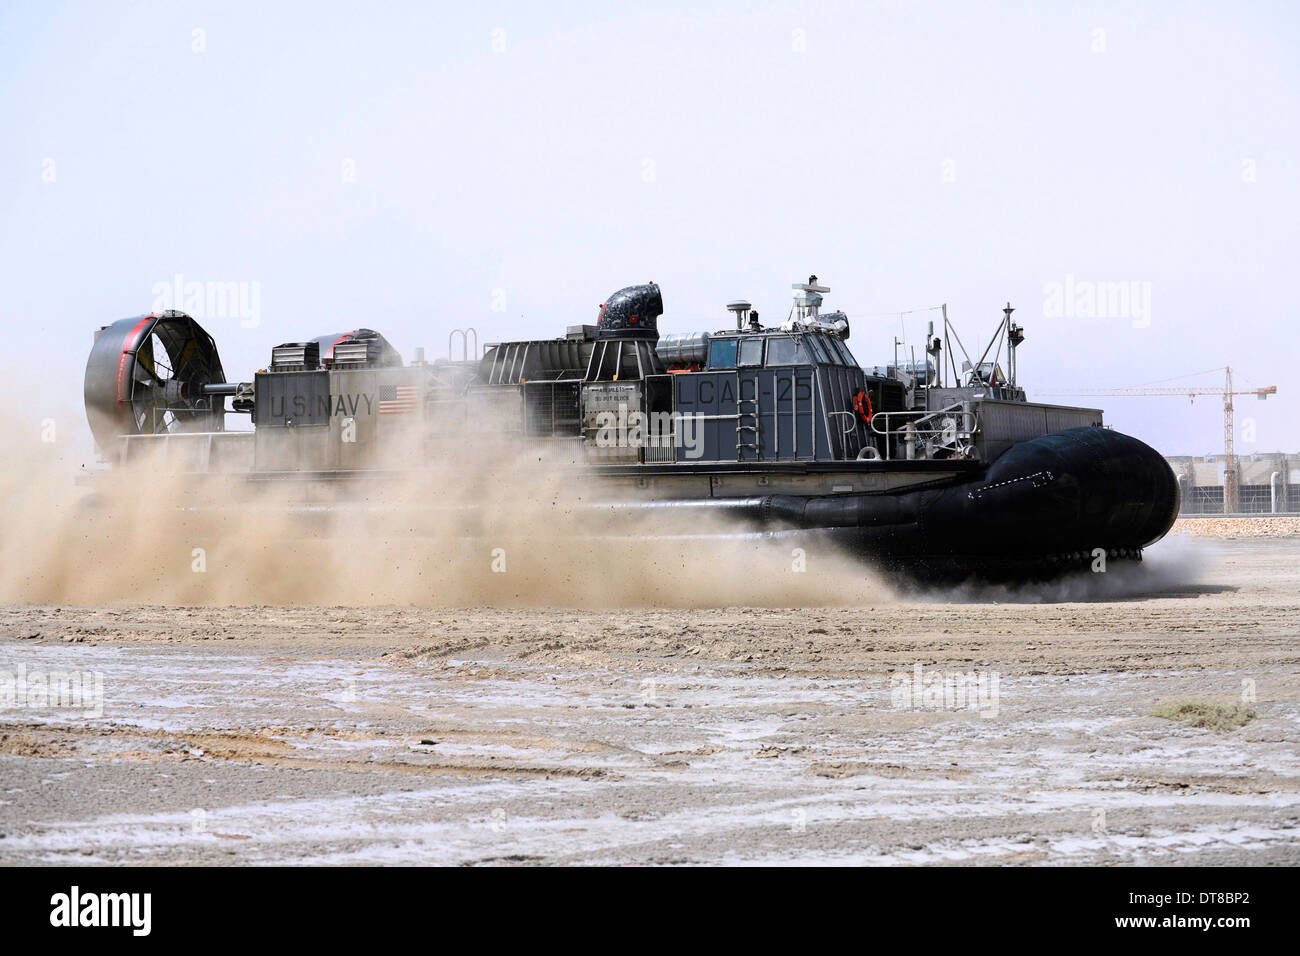 An air-cushion landing craft approaches the shore of Camp Al-Galail, Qatar. Stock Photo